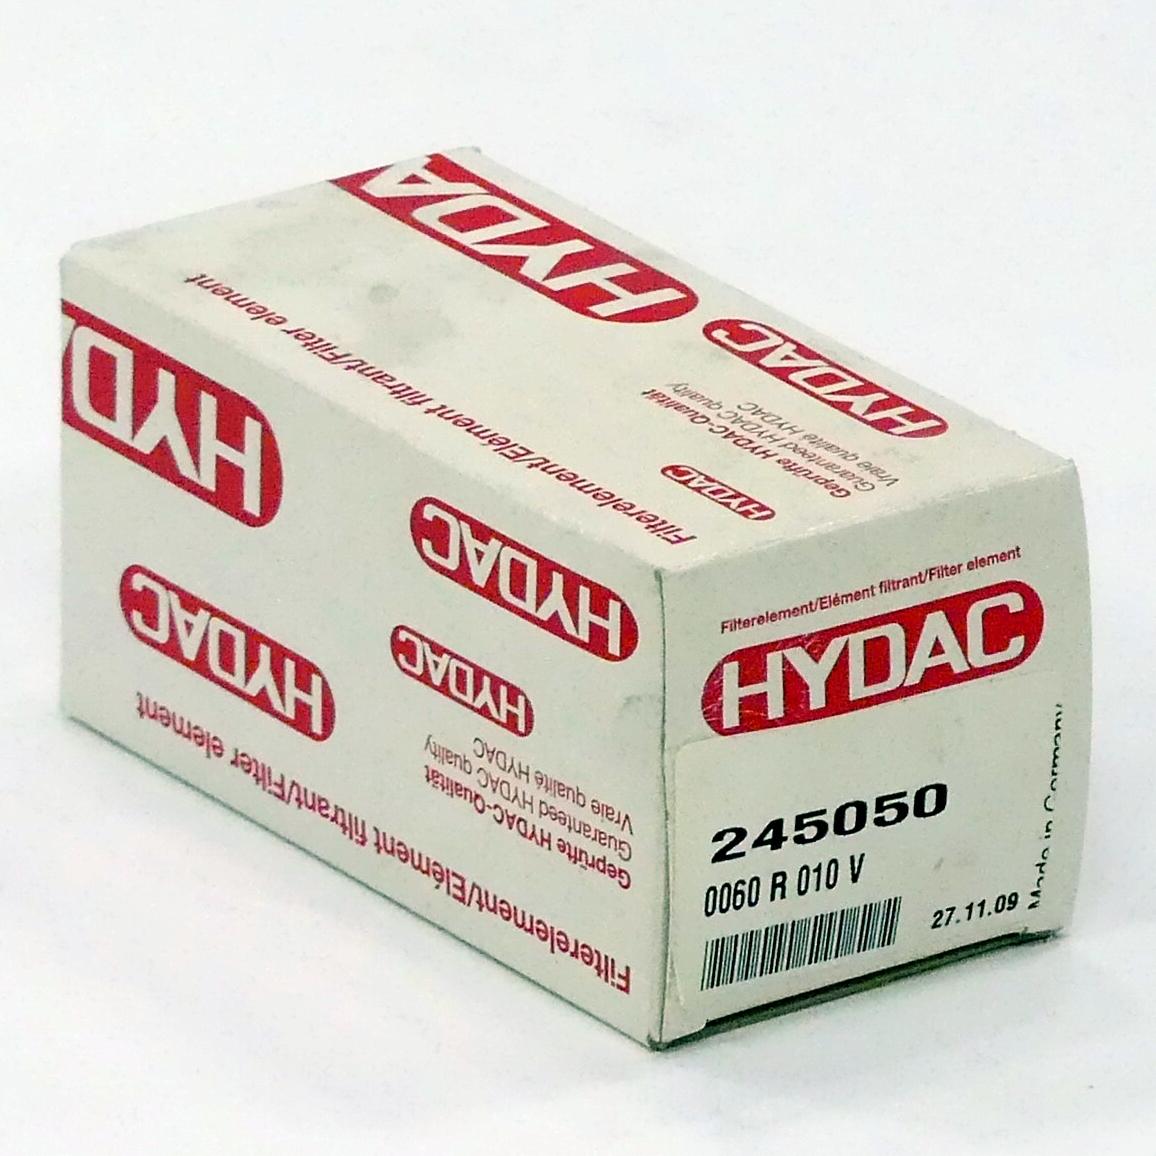 Produktfoto 3 von HYDAC Filterelement 0060 R 011 V